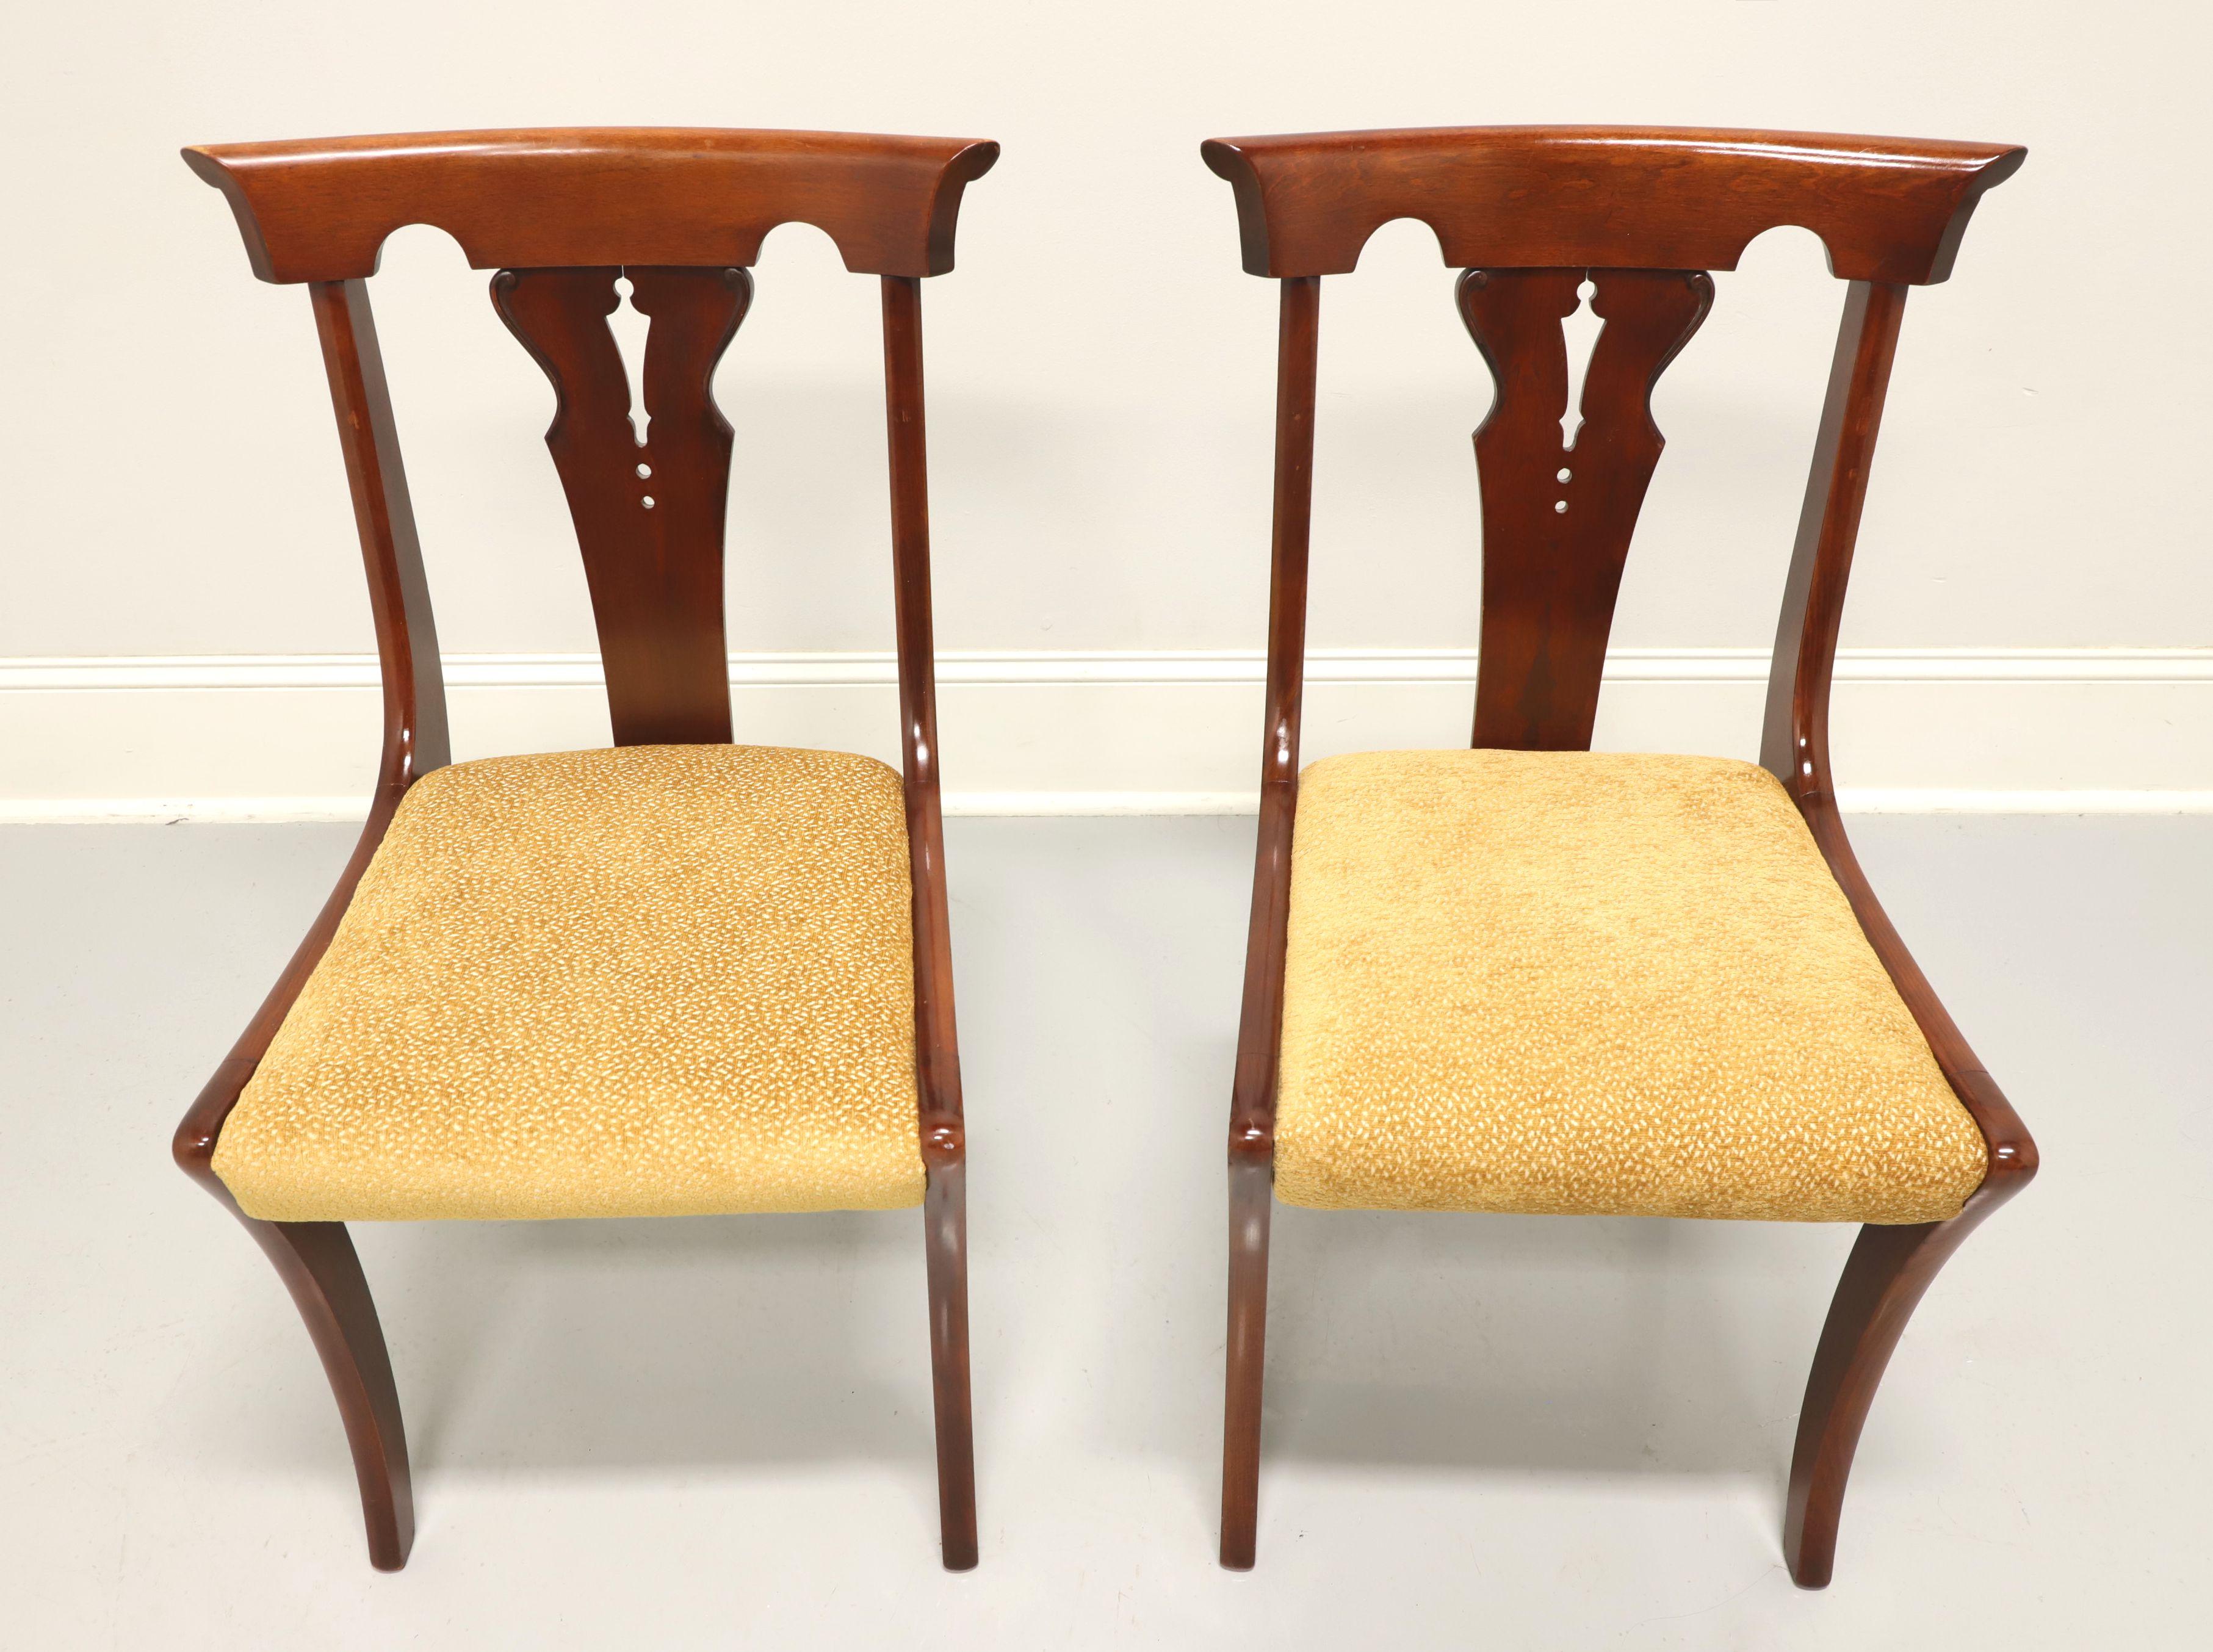 Une paire de chaises latérales de style Empire, sans marque. En merisier massif, il présente une traverse de crête sculptée, un dossier sculpté, une assise tapissée d'un tissu texturé de couleur or et des pieds légèrement incurvés avec une civière